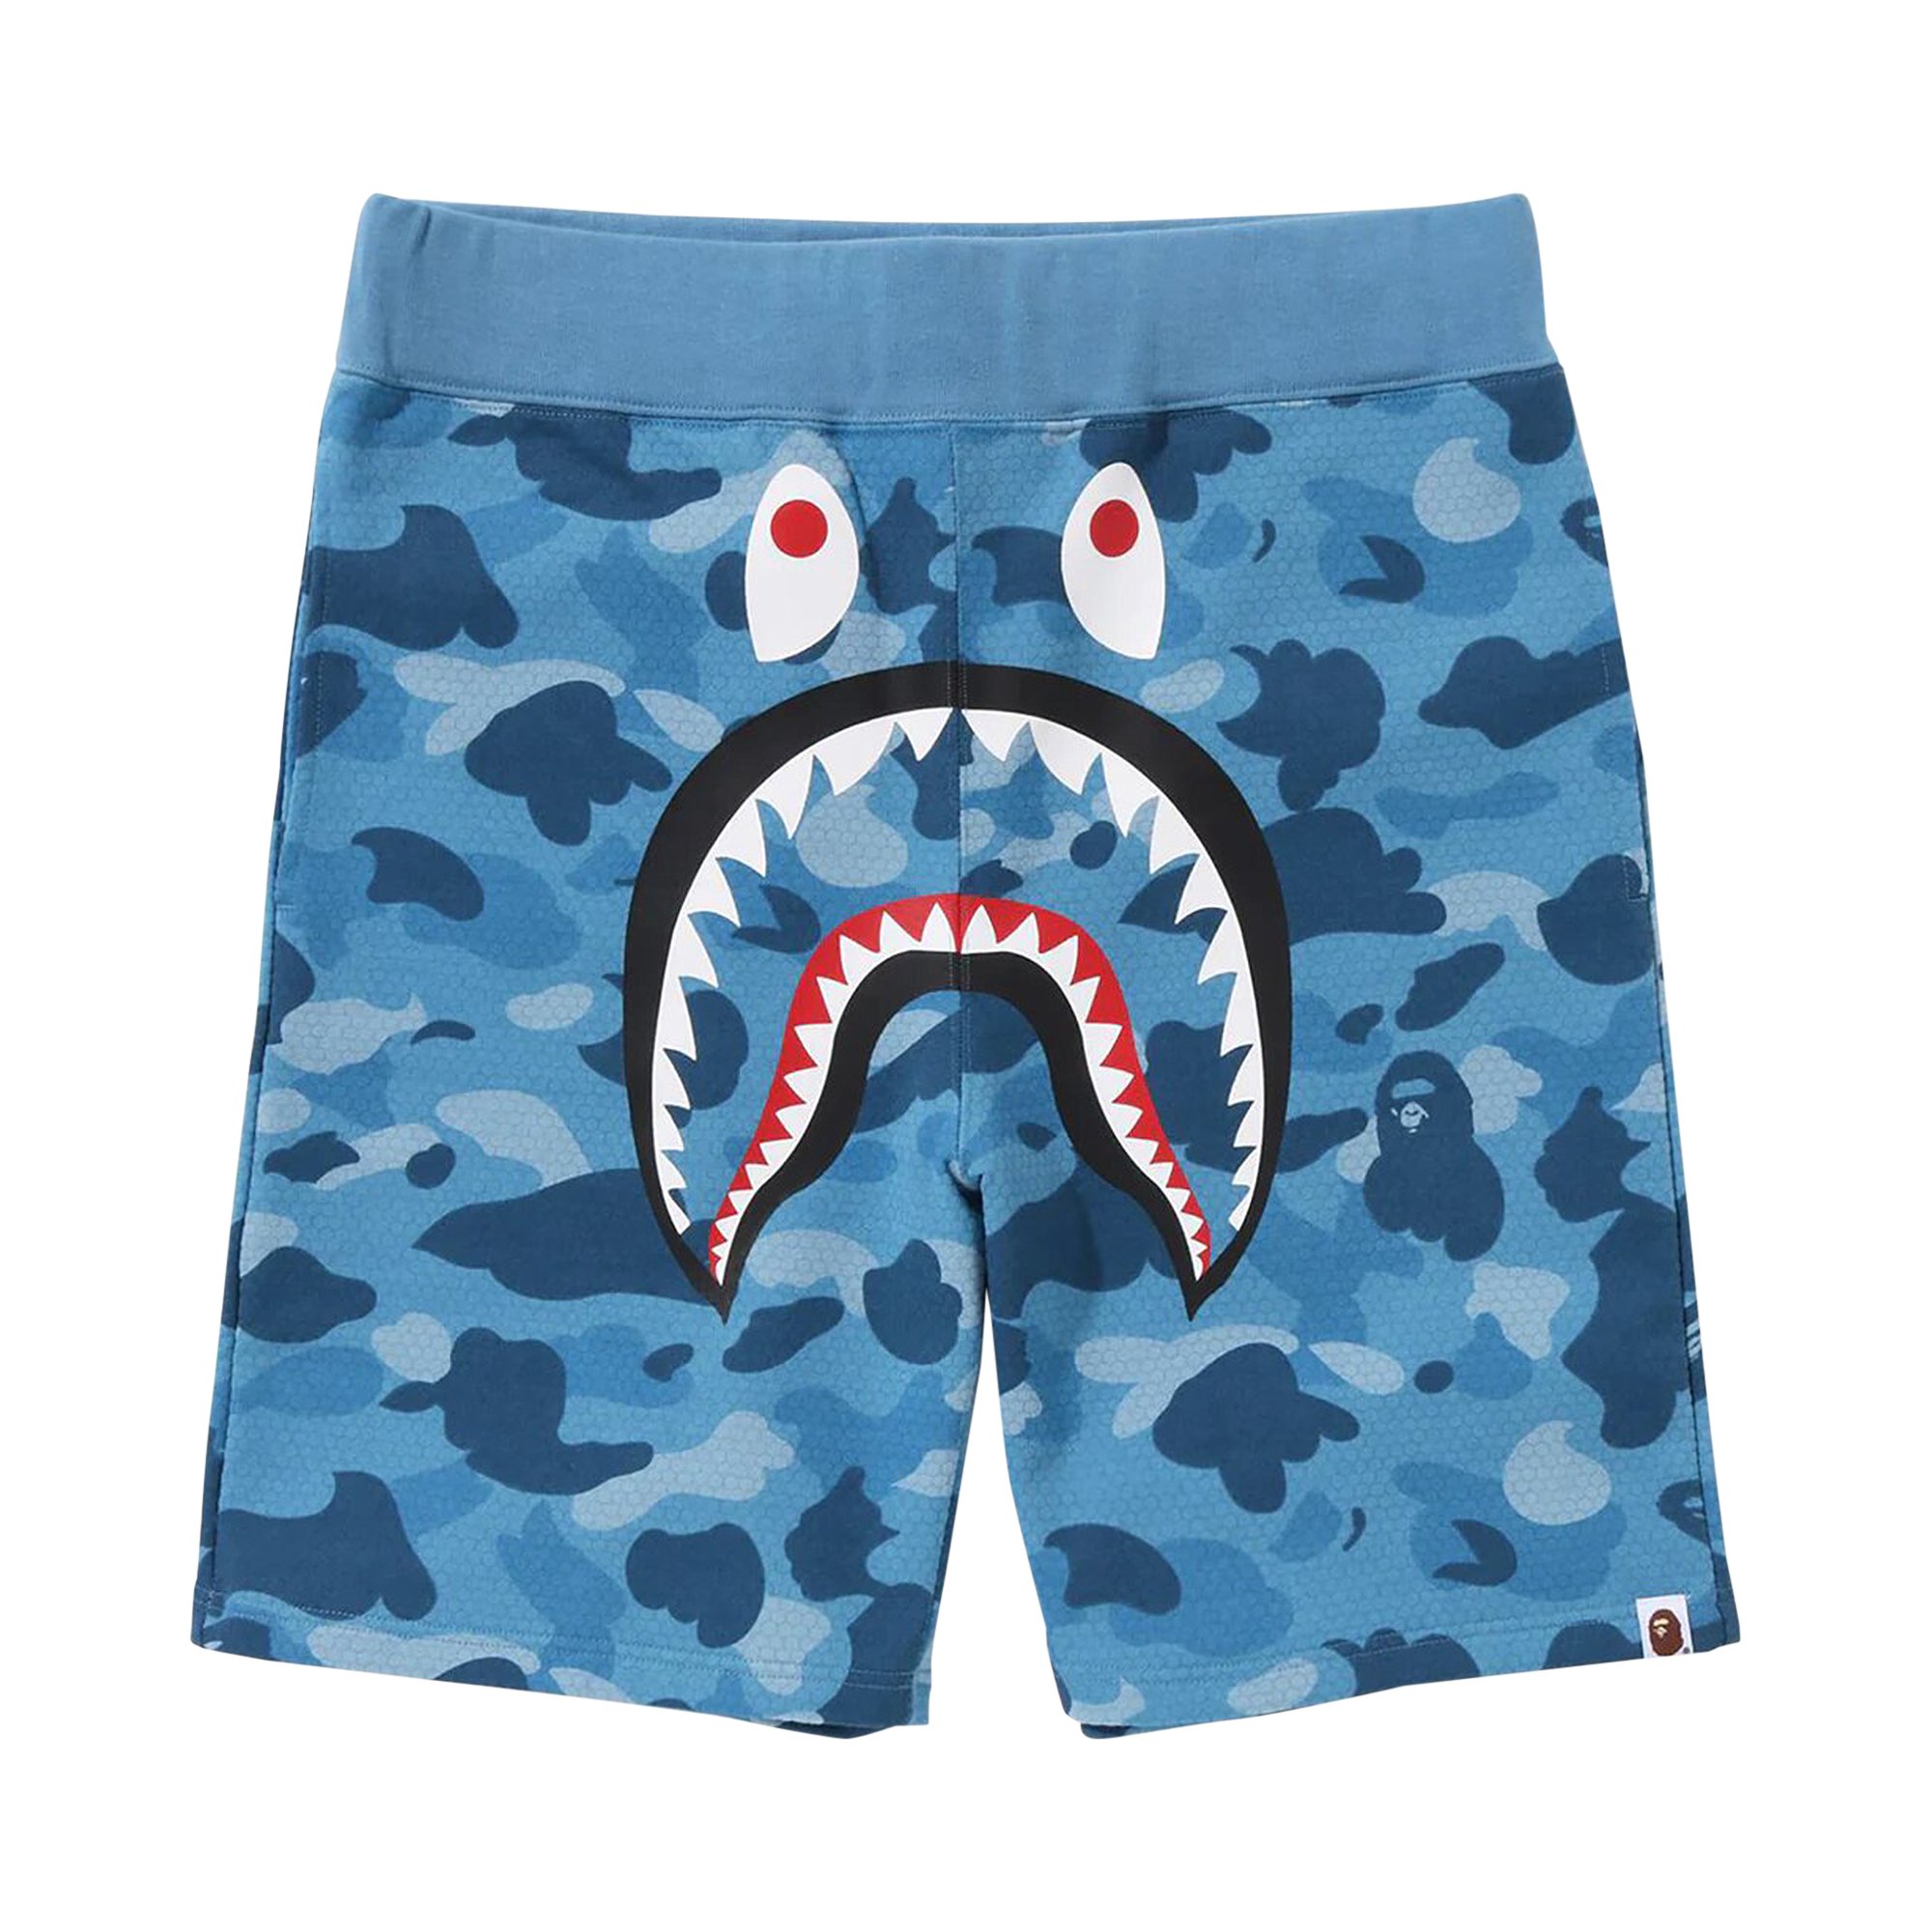 Спортивные шорты BAPE Honeycomb Camo Shark, синие